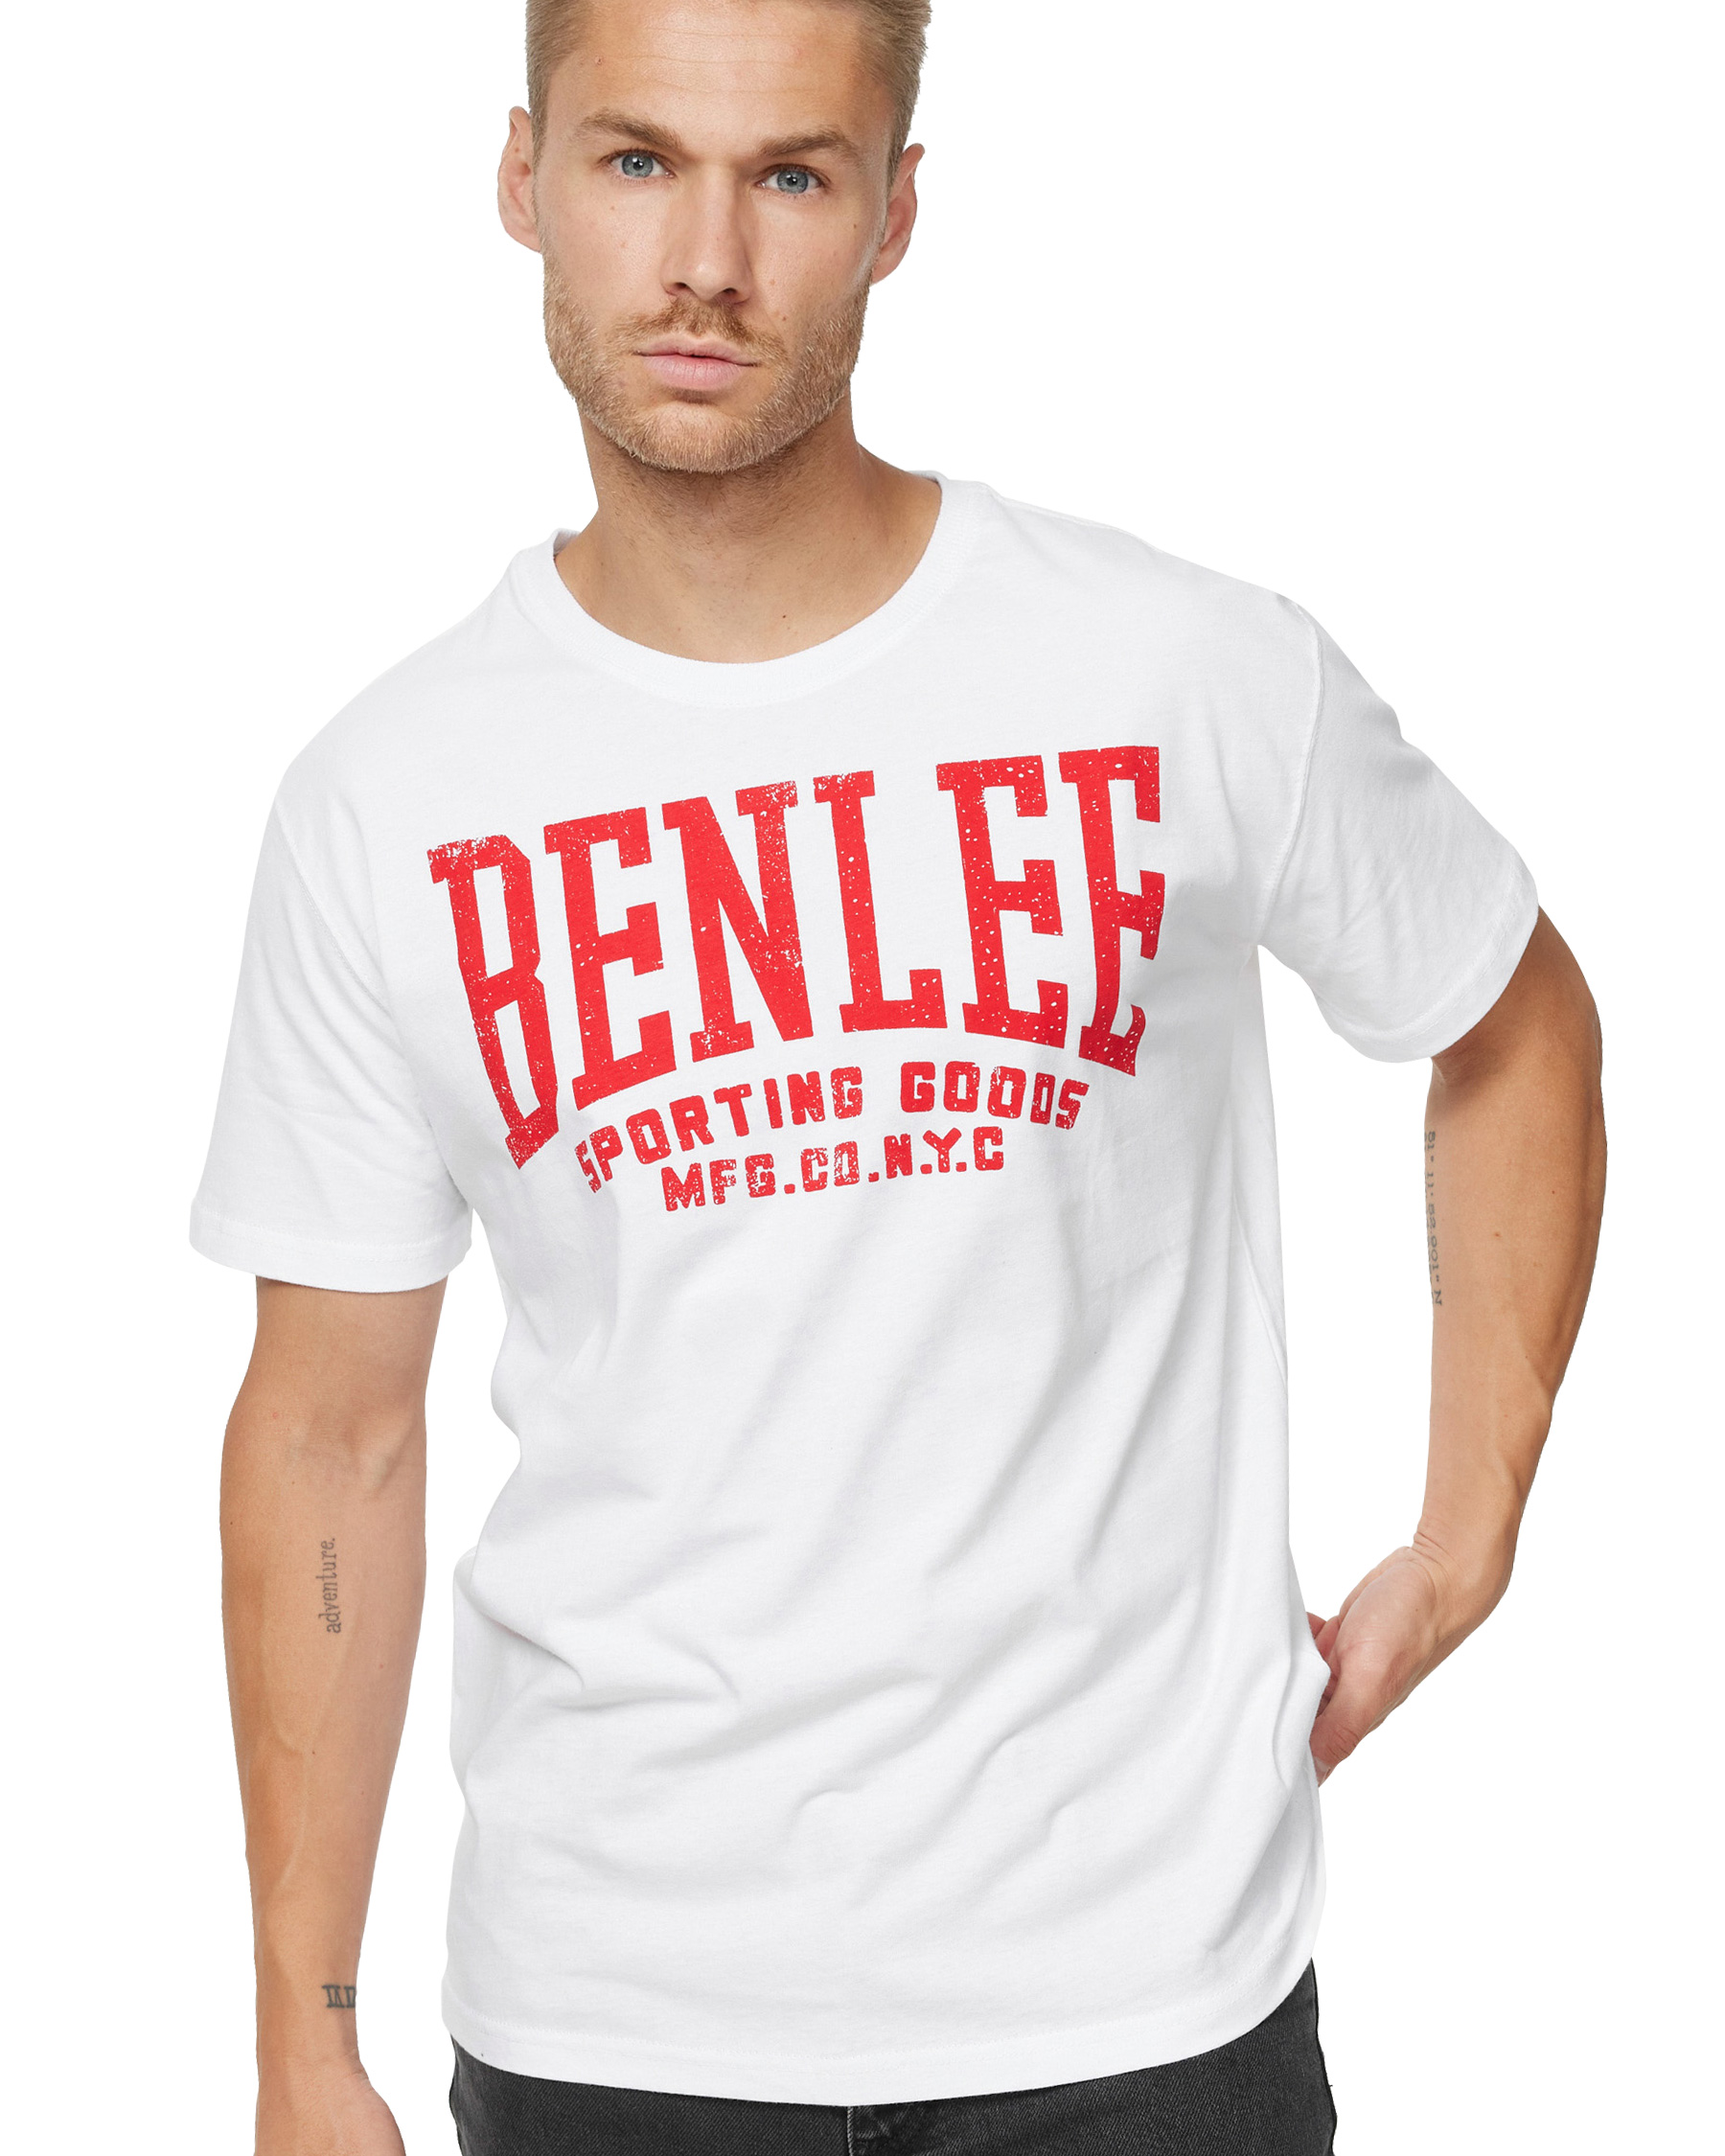 BenLee T-Shirt Turney - Herren T-Shirt - BenLee Boxsport und Sportswear